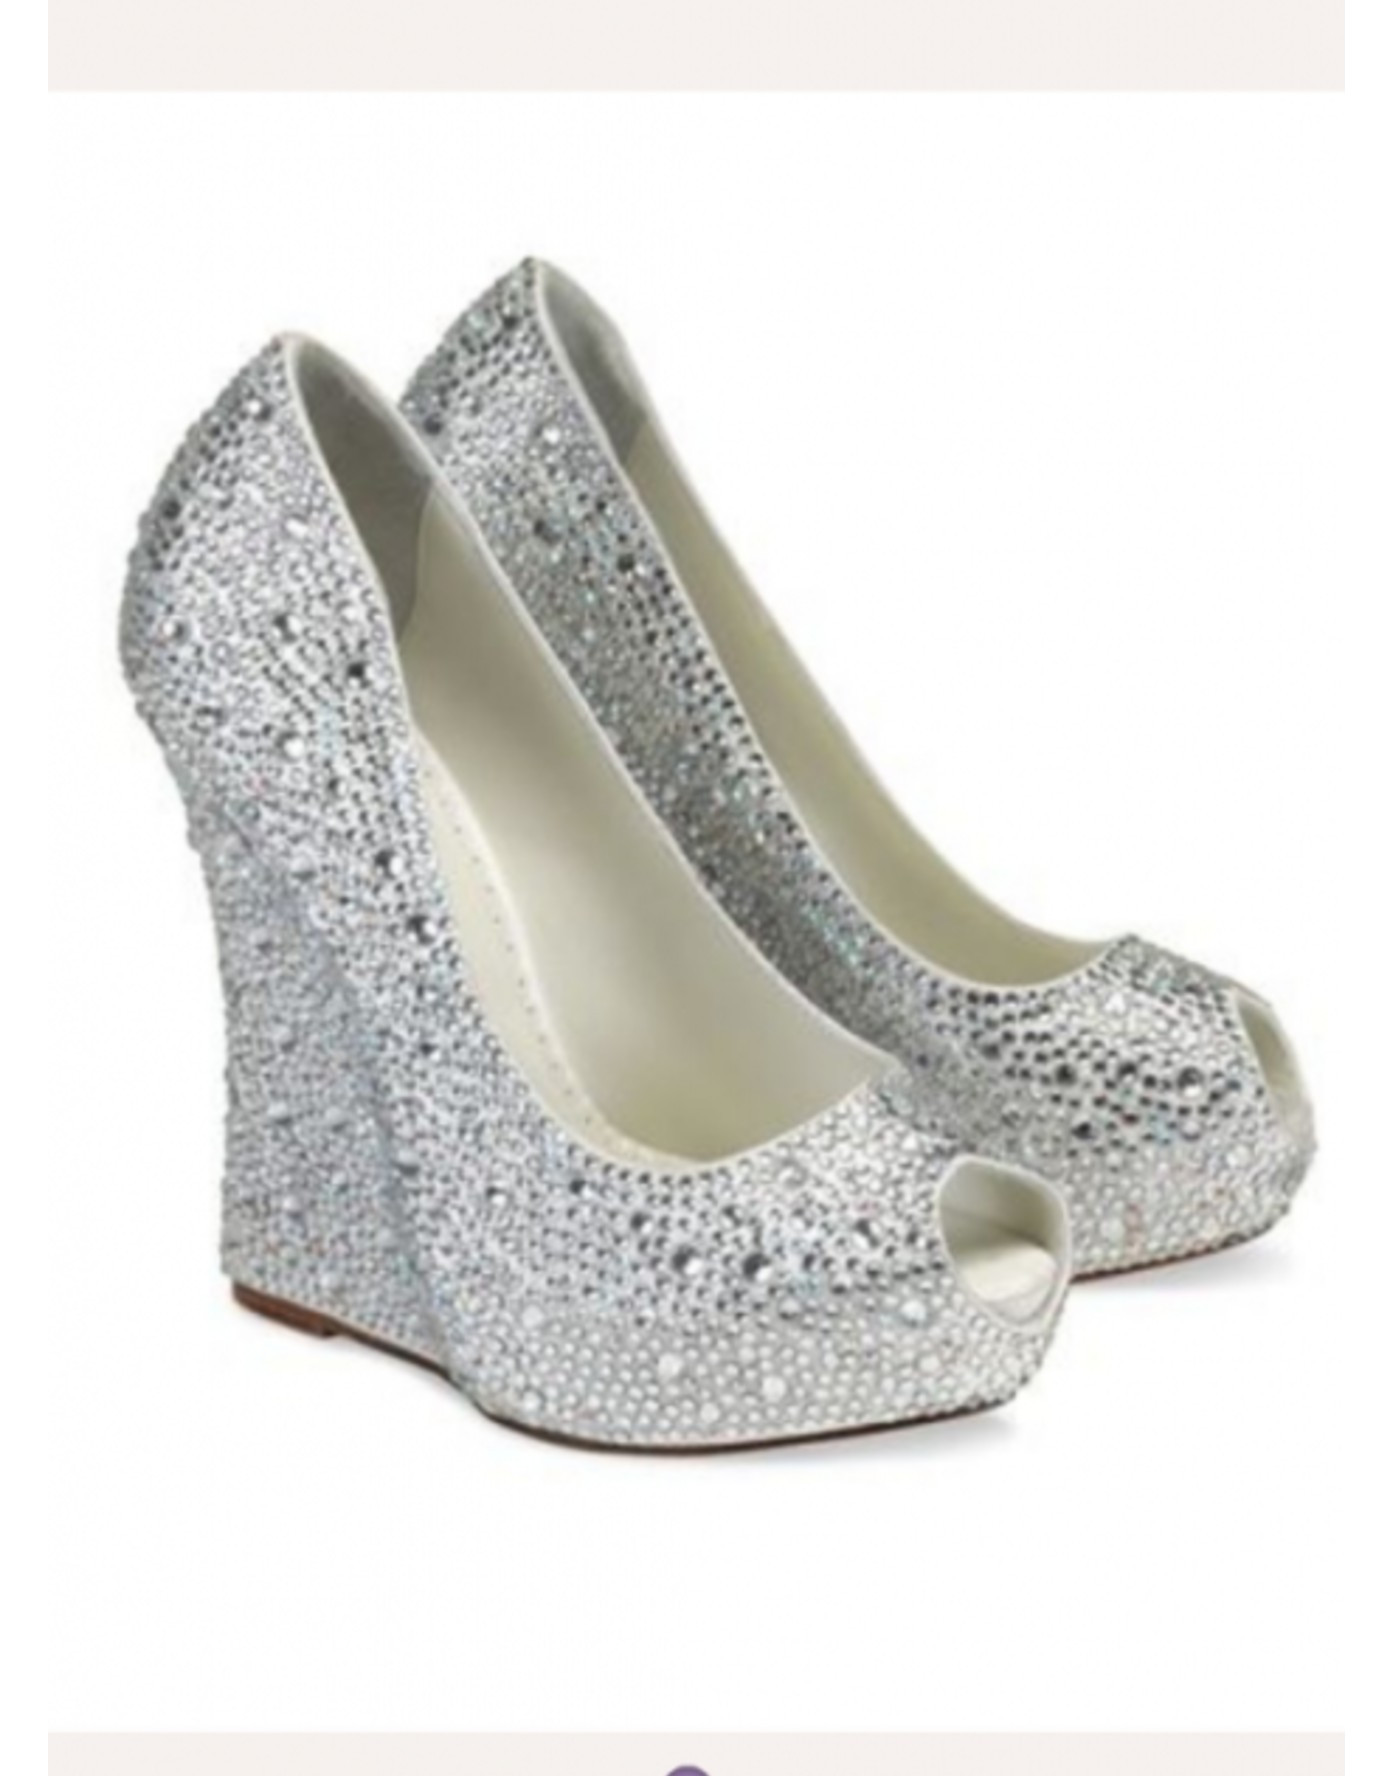 Mila Wedge Wedding Shoe